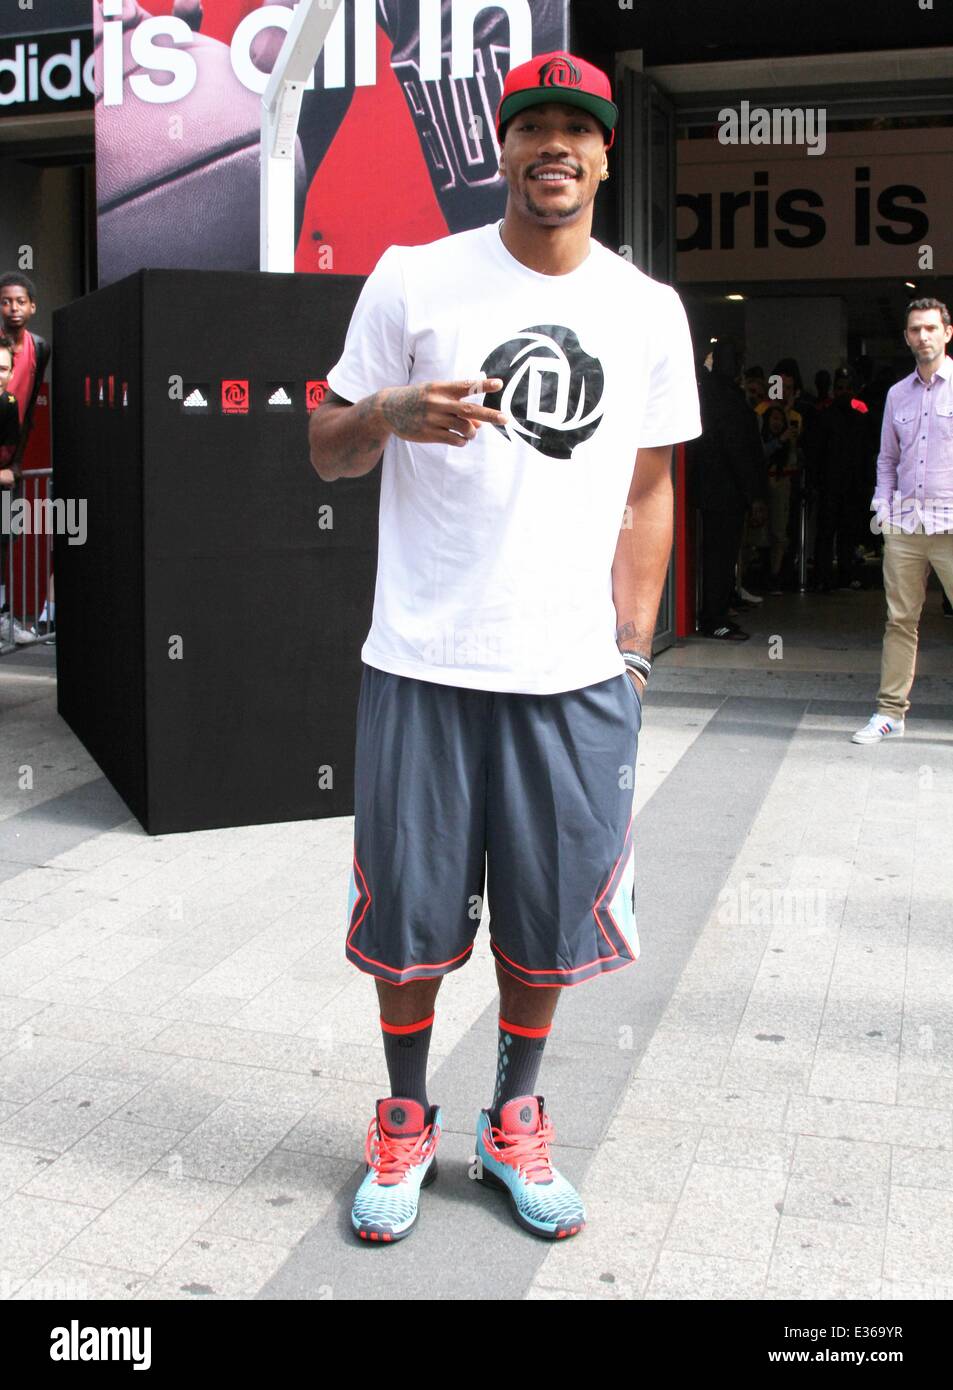 Los Chicago Bulls Derrick Rose jugador asiste a un evento promocional de Adidas tienda cerca de Champs Elysees con: Derrick Rose donde: París, Francia cuando: 13 Jul 2013 Fotografía de stock Alamy